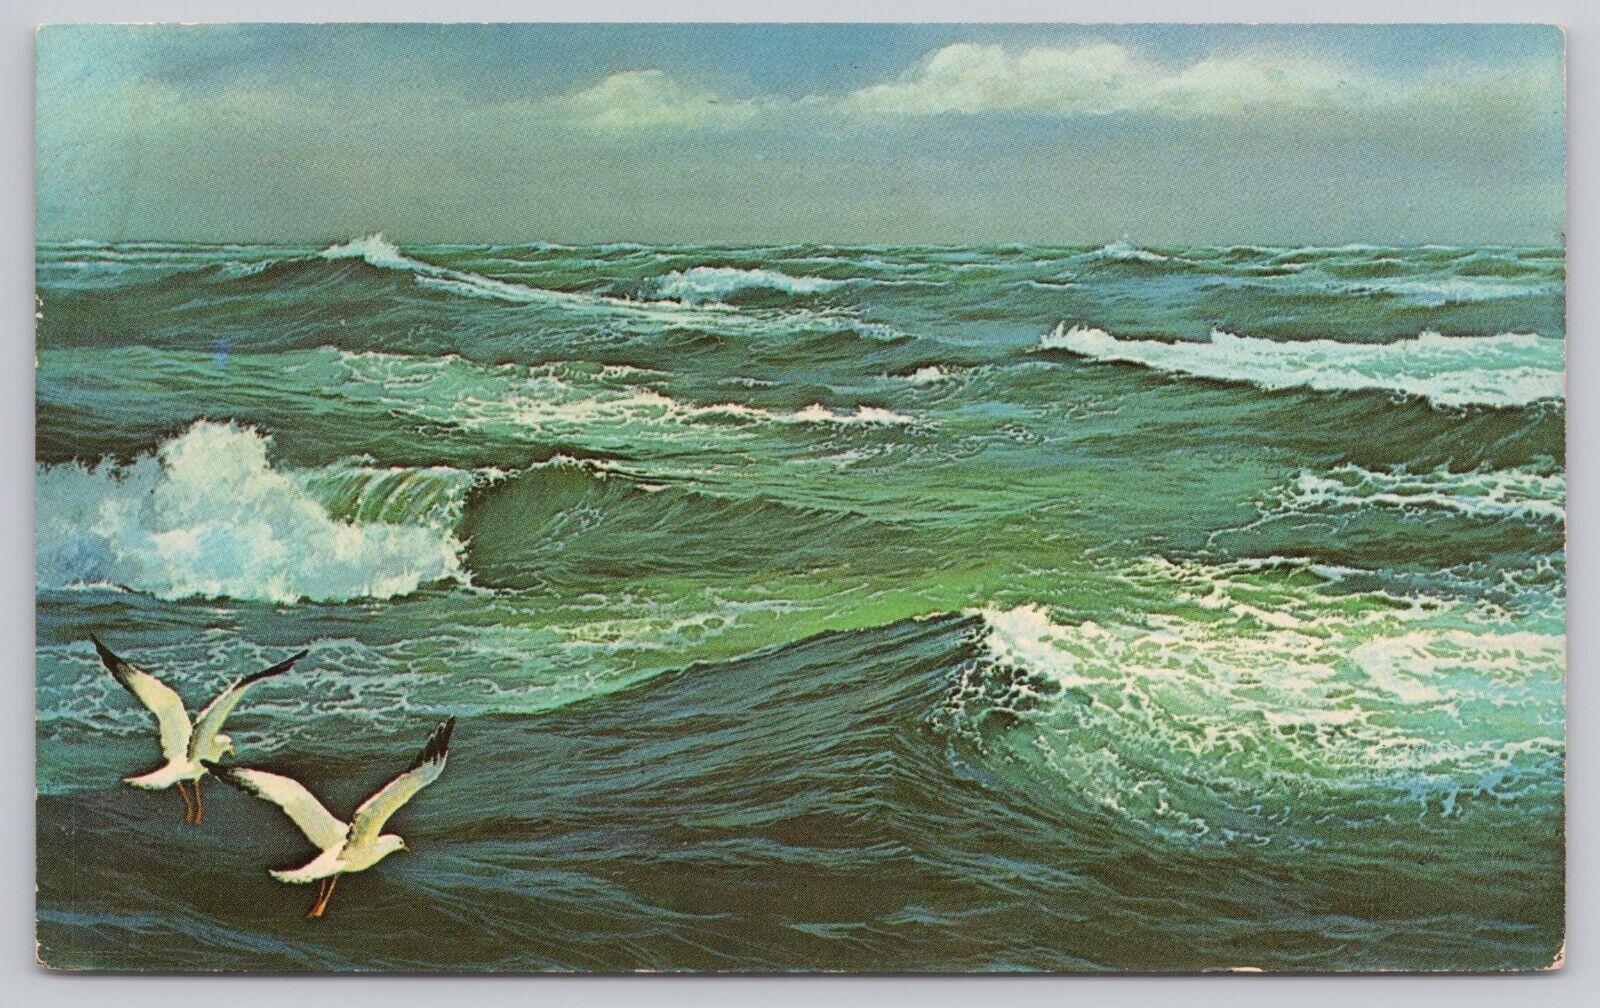 Myrtle Beach South Carolina, Ocean Breakers Waves & Sea Gulls, Vintage Postcard